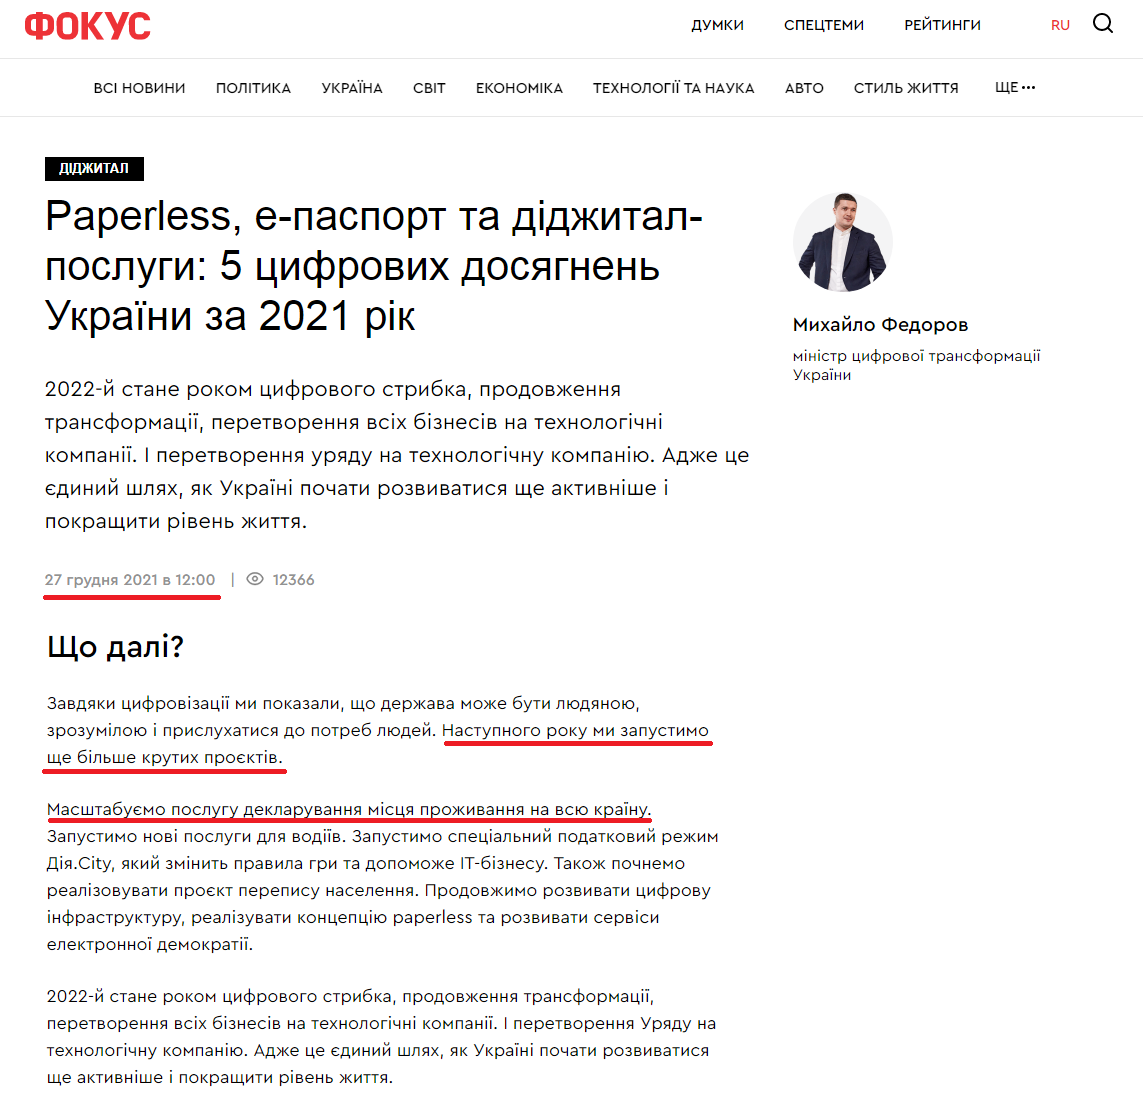 https://focus.ua/uk/digital/501671-paperless-e-pasport-i-didzhital-uslugi-5-cifrovych-dostizheniy-ukrainy-za-2021-god